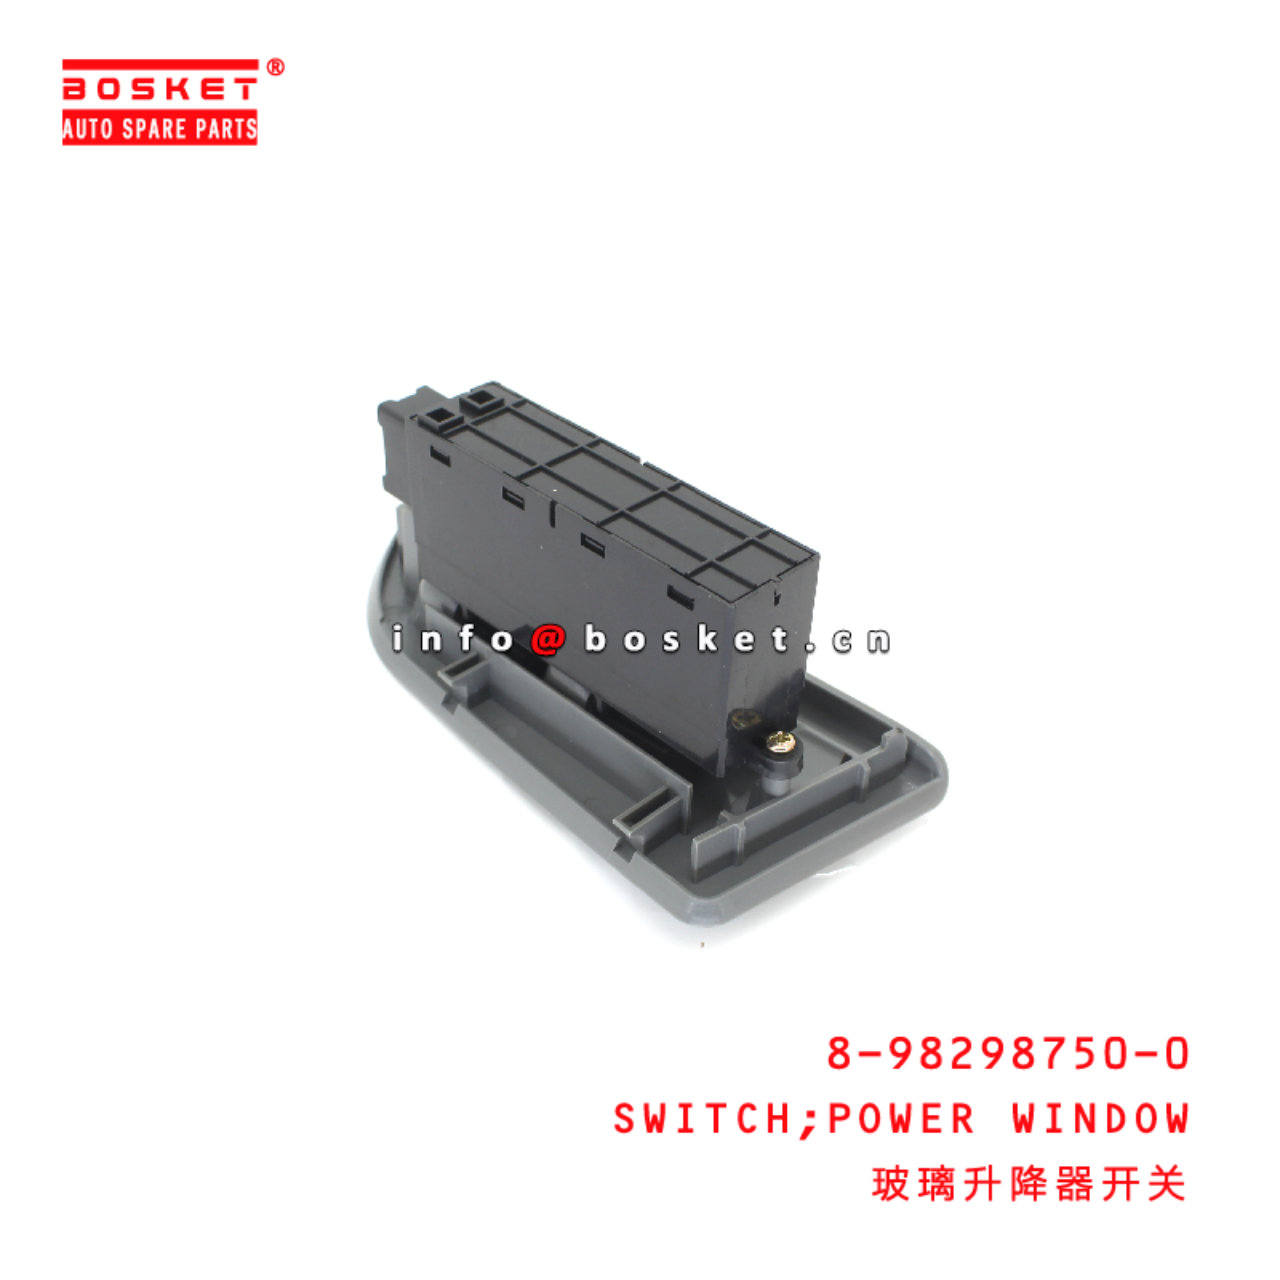 8-98298750-0 Power Window Switch suitable for ISUZU VC46 4HK1 6UZ1 8982987500